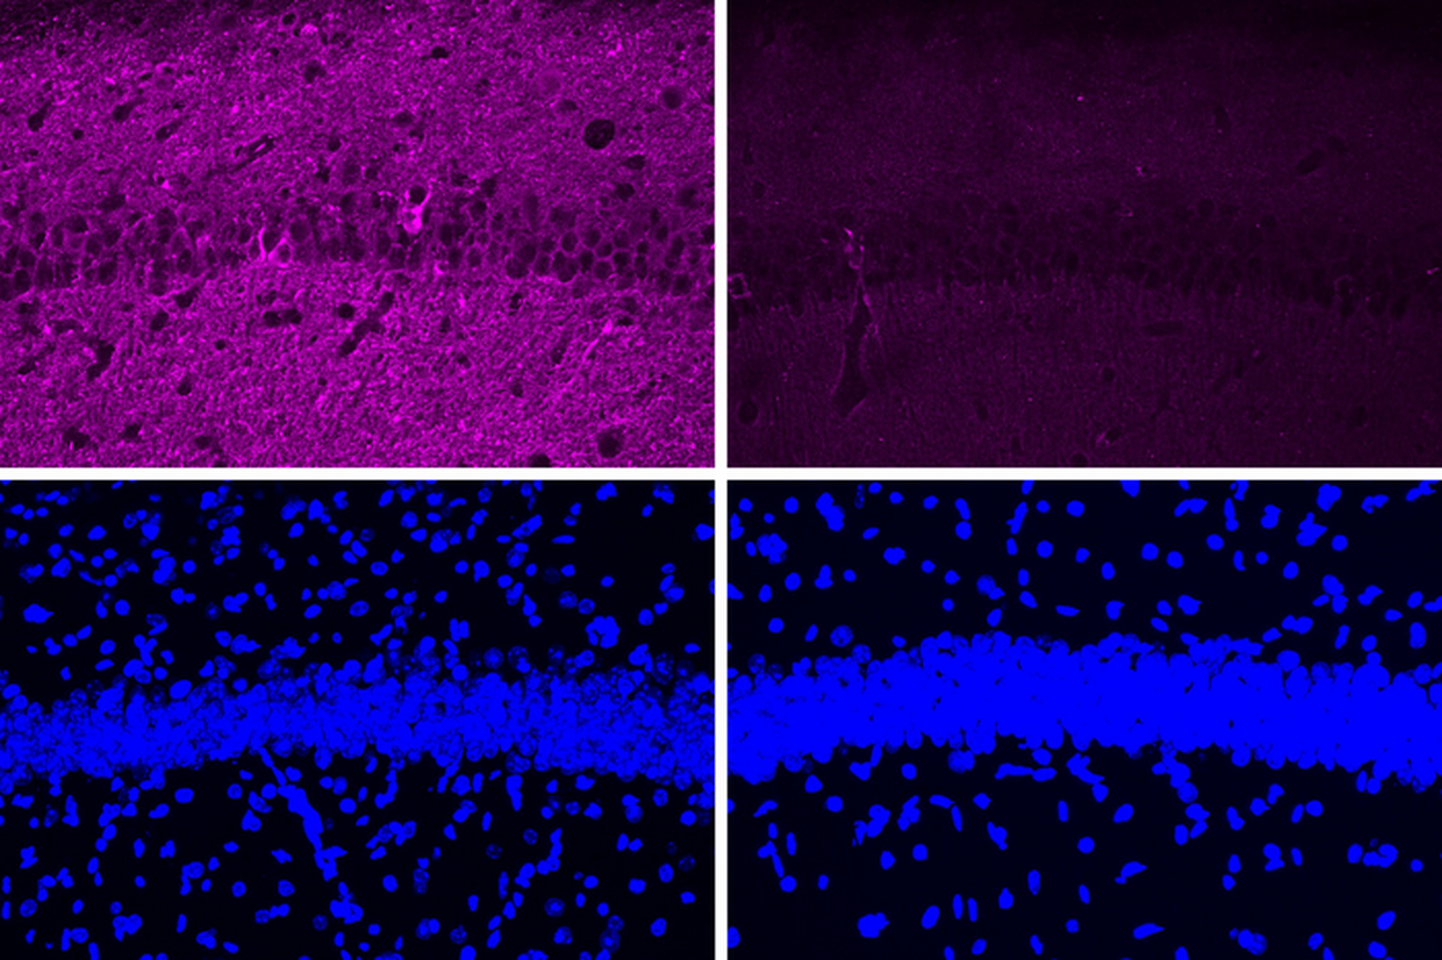 Uue peptiidiga töödeldud hiirte ajus (kaks parempoolset paneeli) on näha palju vähem Tau valke (värvitud lillaks). Vasakpoolsed paneelid näitavad haigusttekitavate peptiidiga töödeldud hiirte neuroneid. Kahel alumisel pildil on DNA raku tuumades värvitud siniseks, mis näitab, et Tau taseme muutused ei ole põhjustatud olulistest muutustest rakupopulatsioonis.